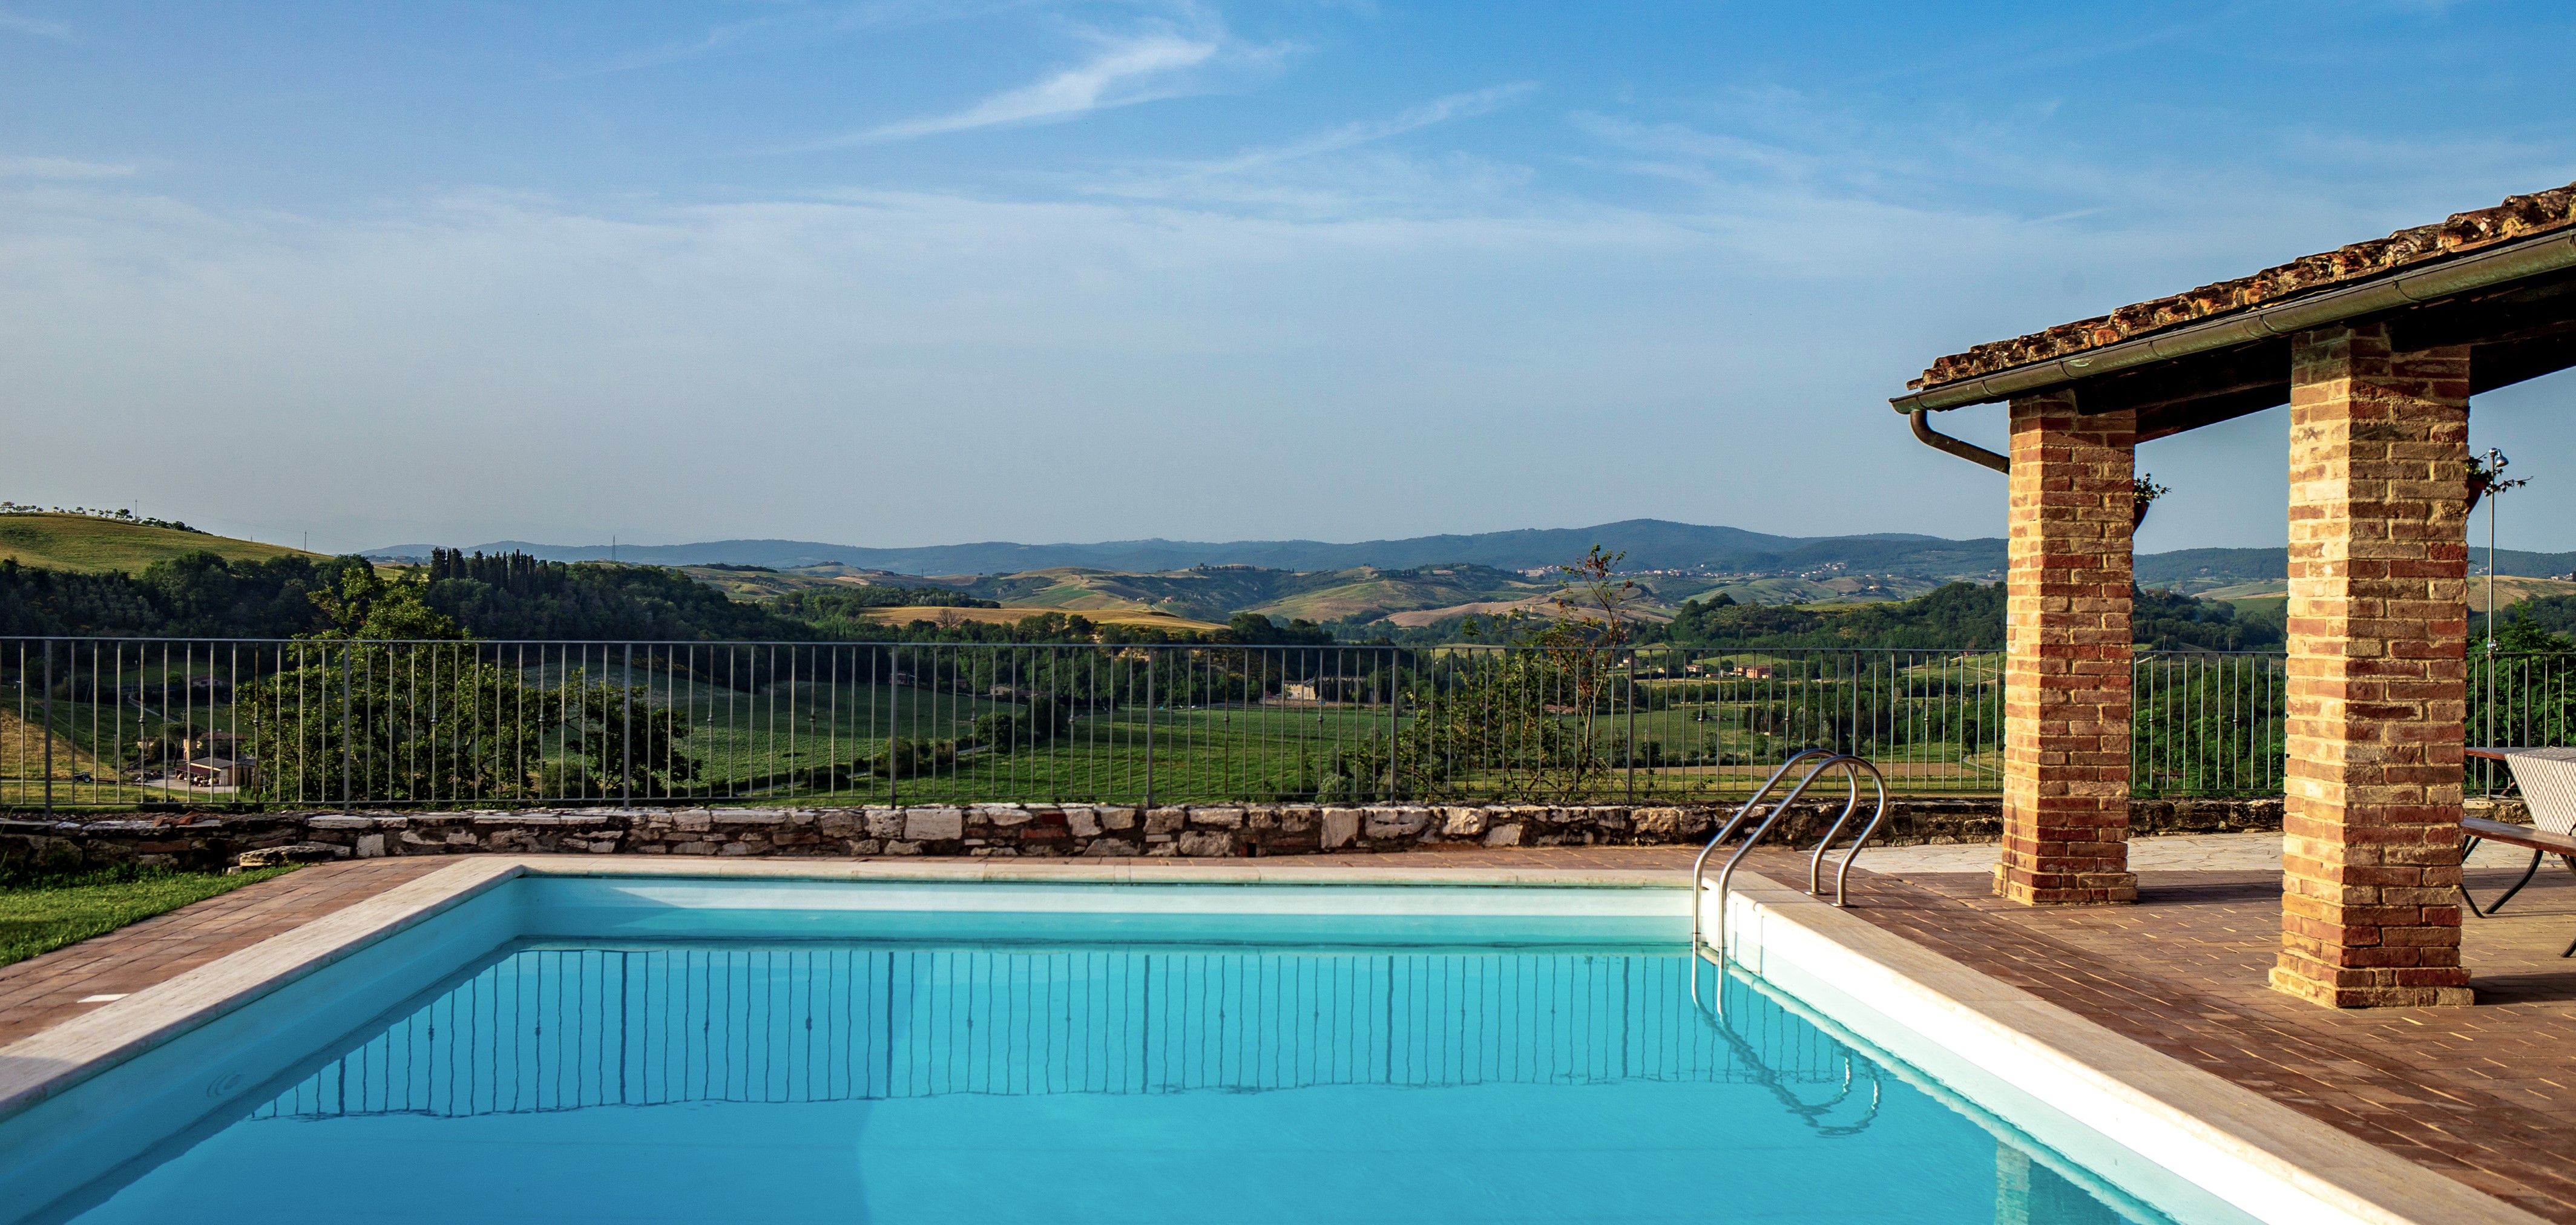 26_Agriturismo, vakantiewoning met zwembad, kleinschalig, Toscane, Siena, Montepulciano, Podere la Coppa, Italië, appartementen (13) kopie